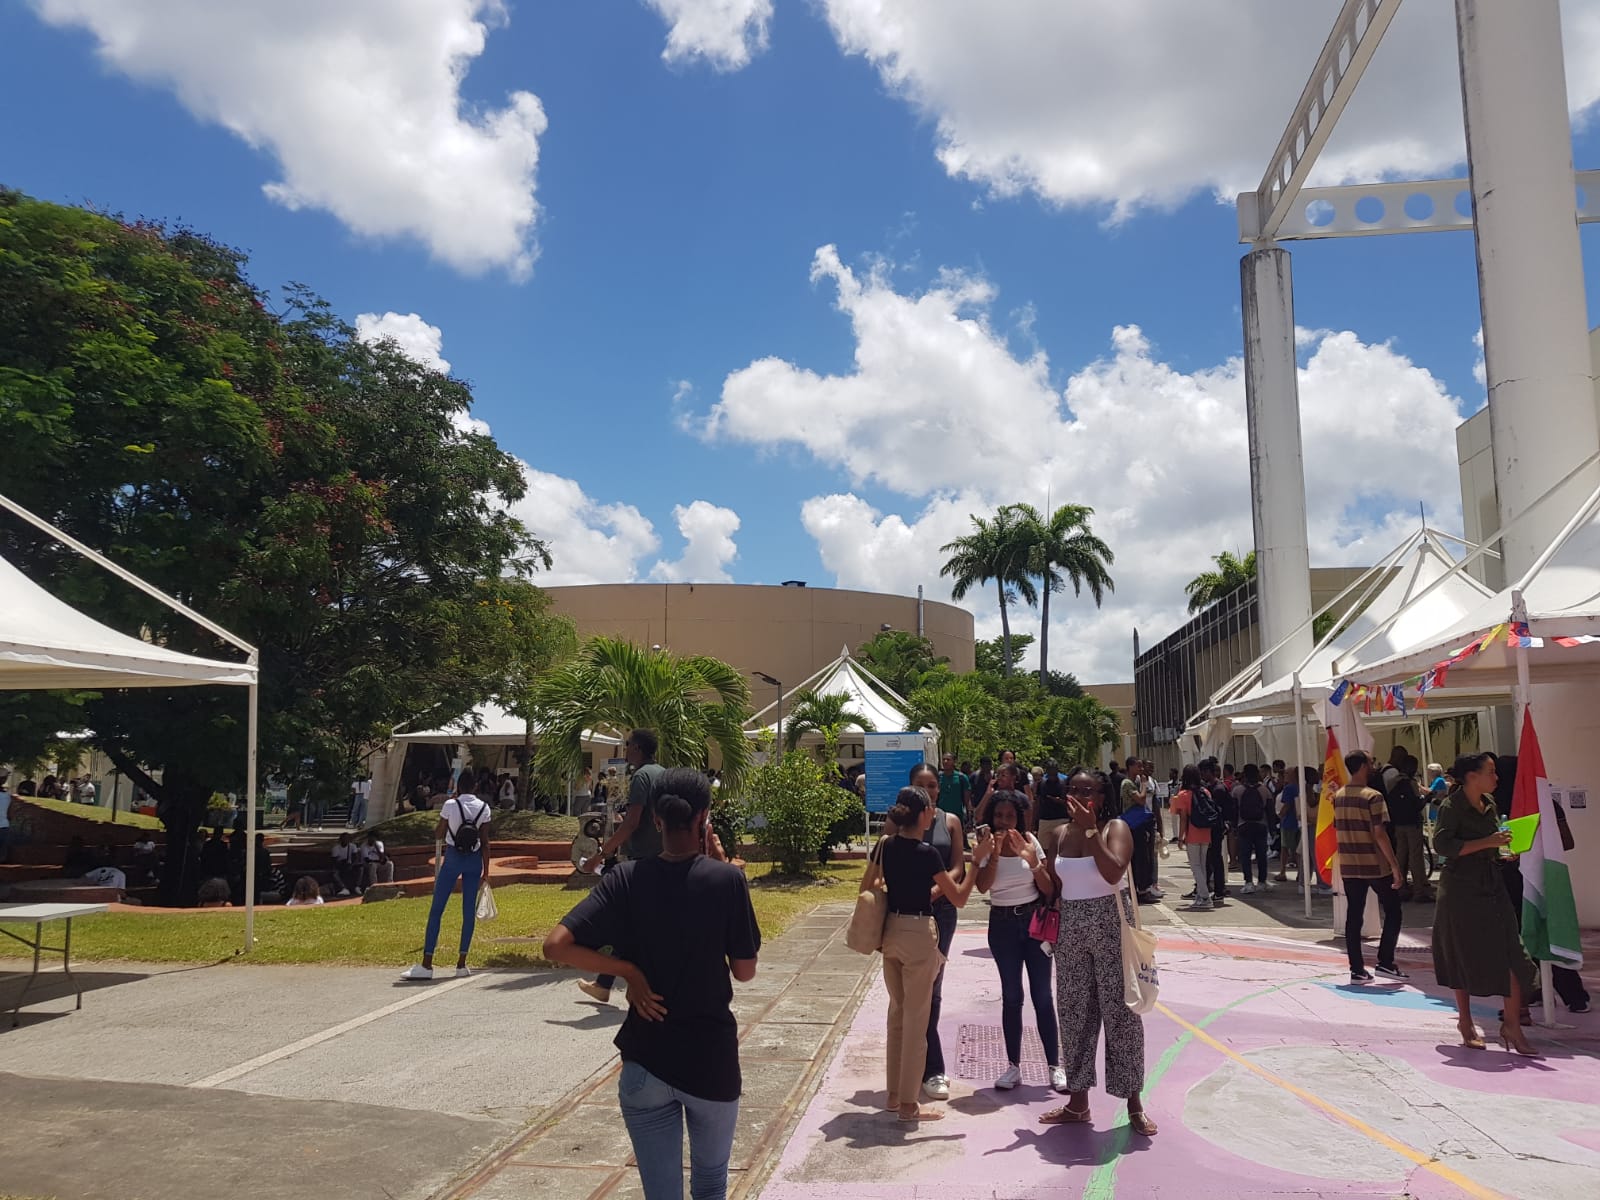     La CTM aidera l'installation d'une trentaine d'étudiants étrangers en Martinique

